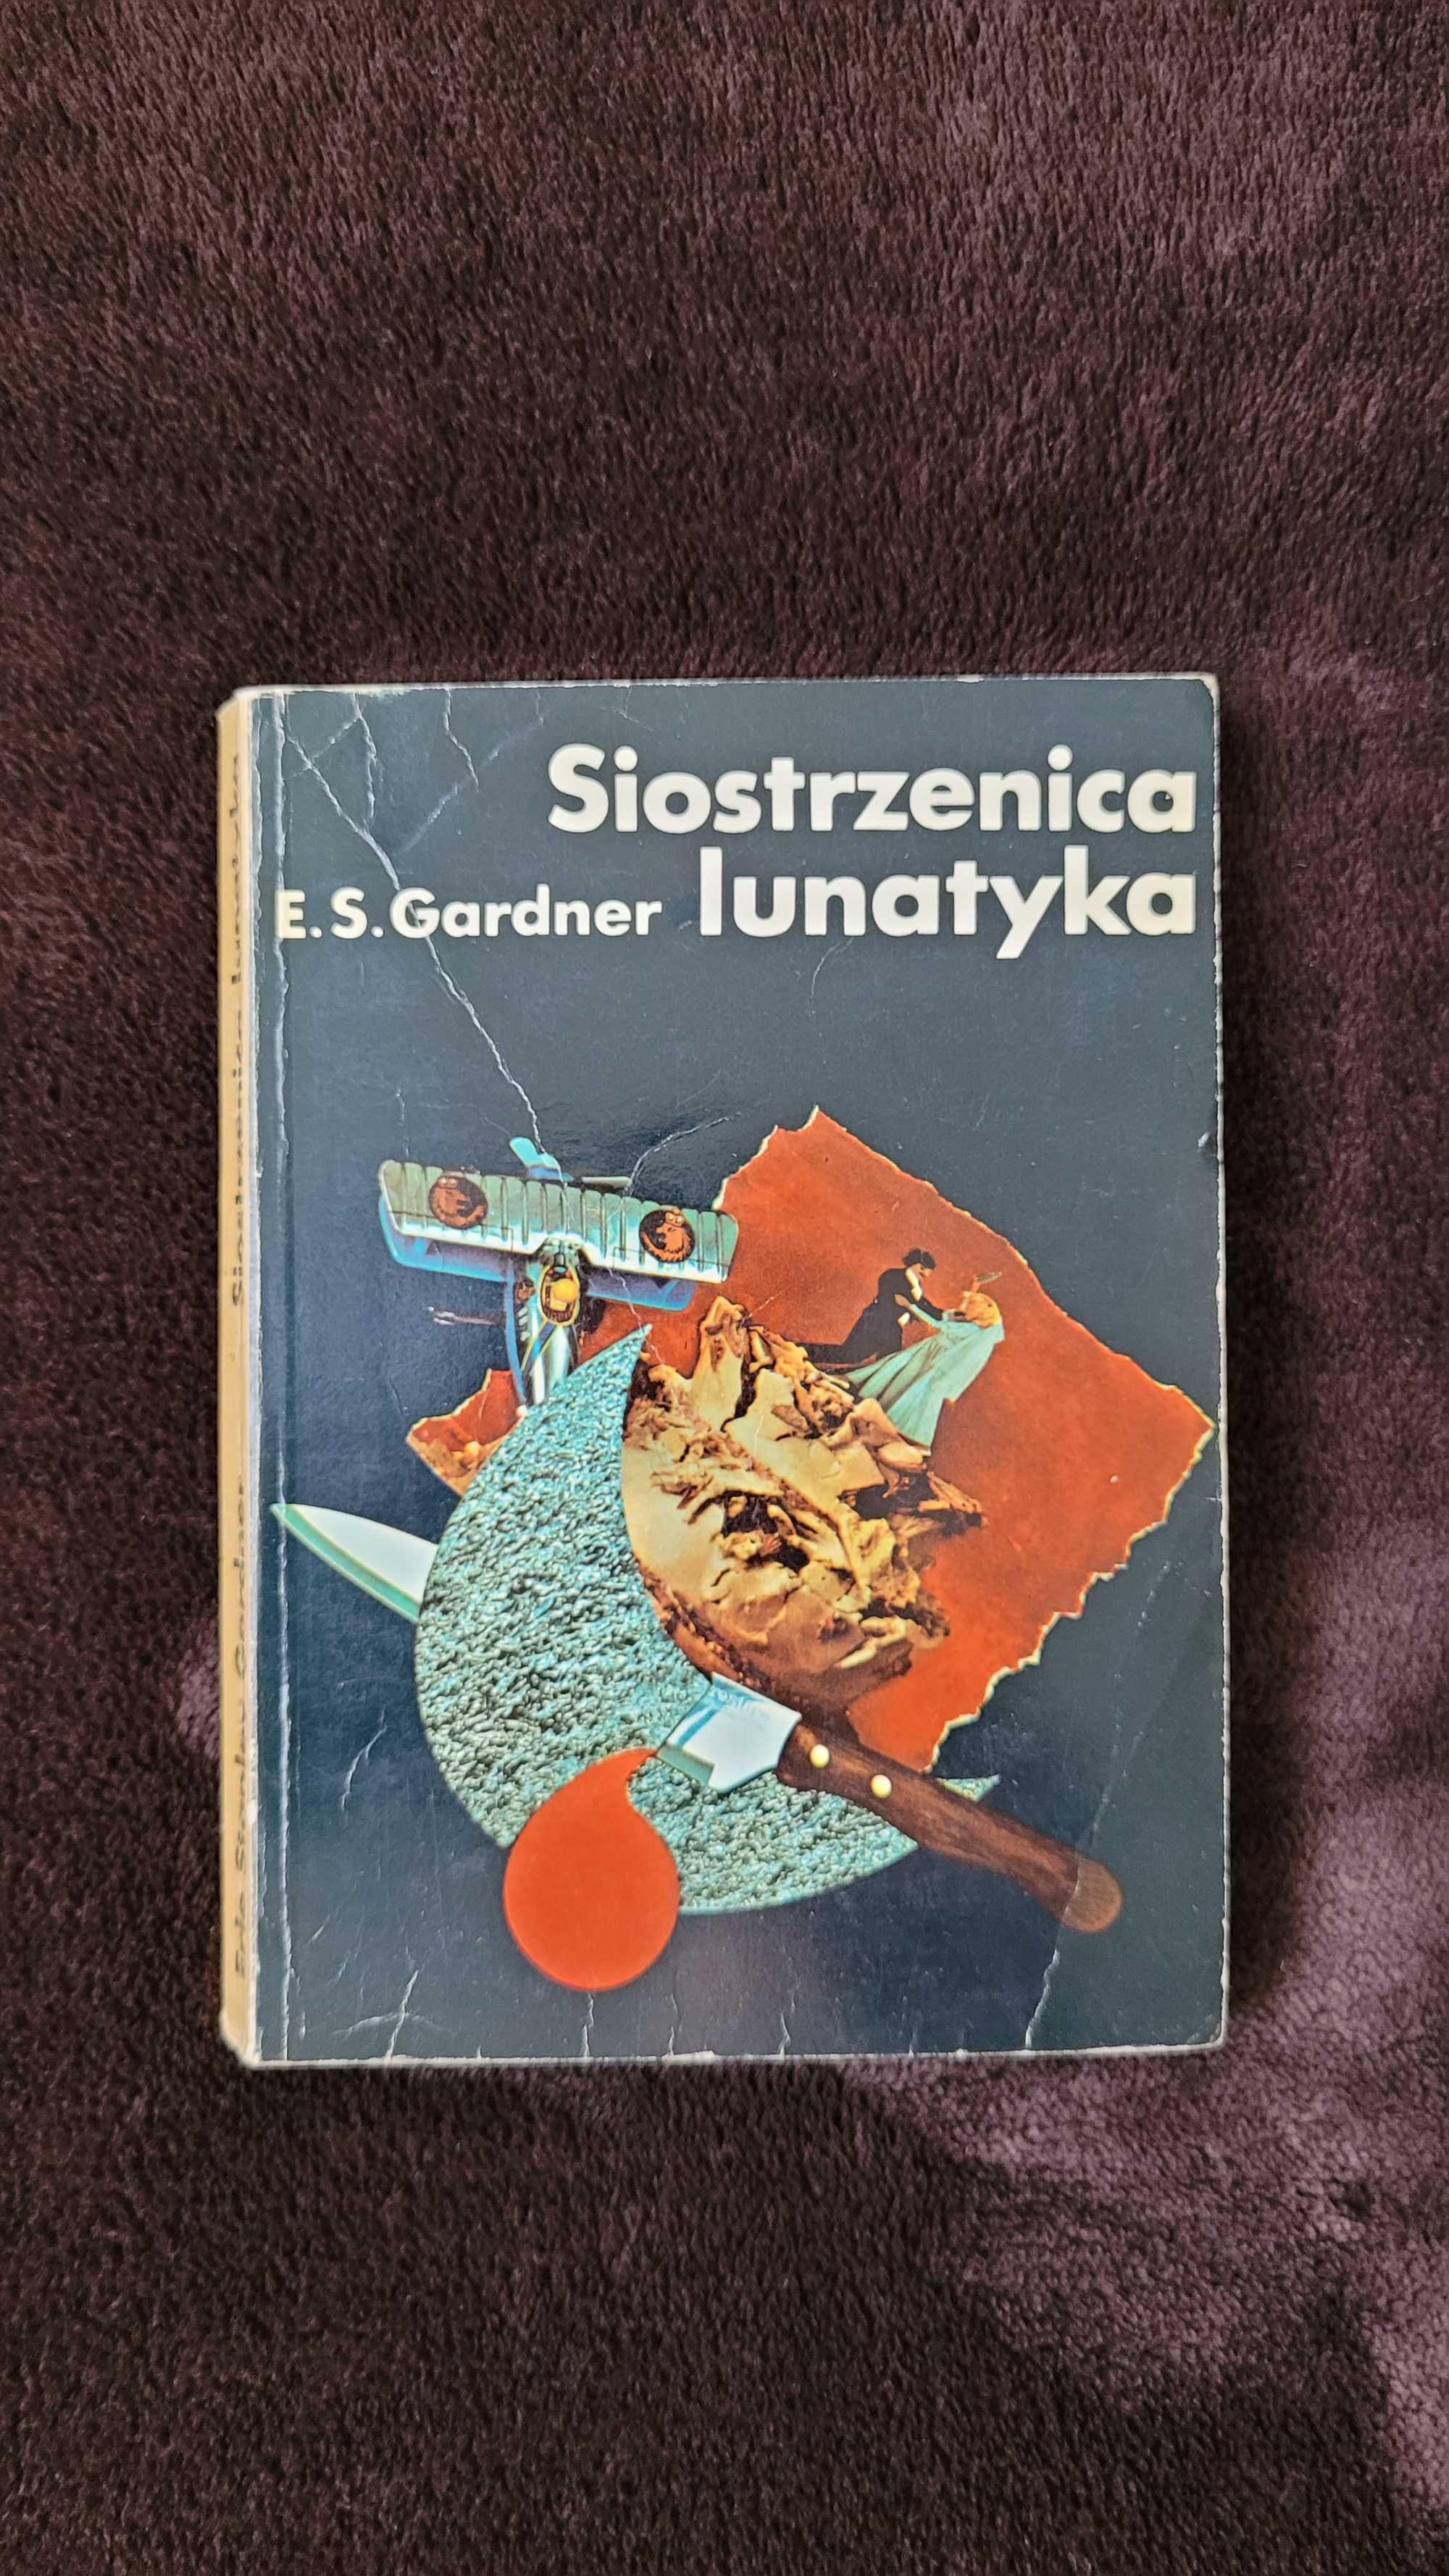 Książka: "Siostrzenica lunatyka", Erle Stanley Gardner